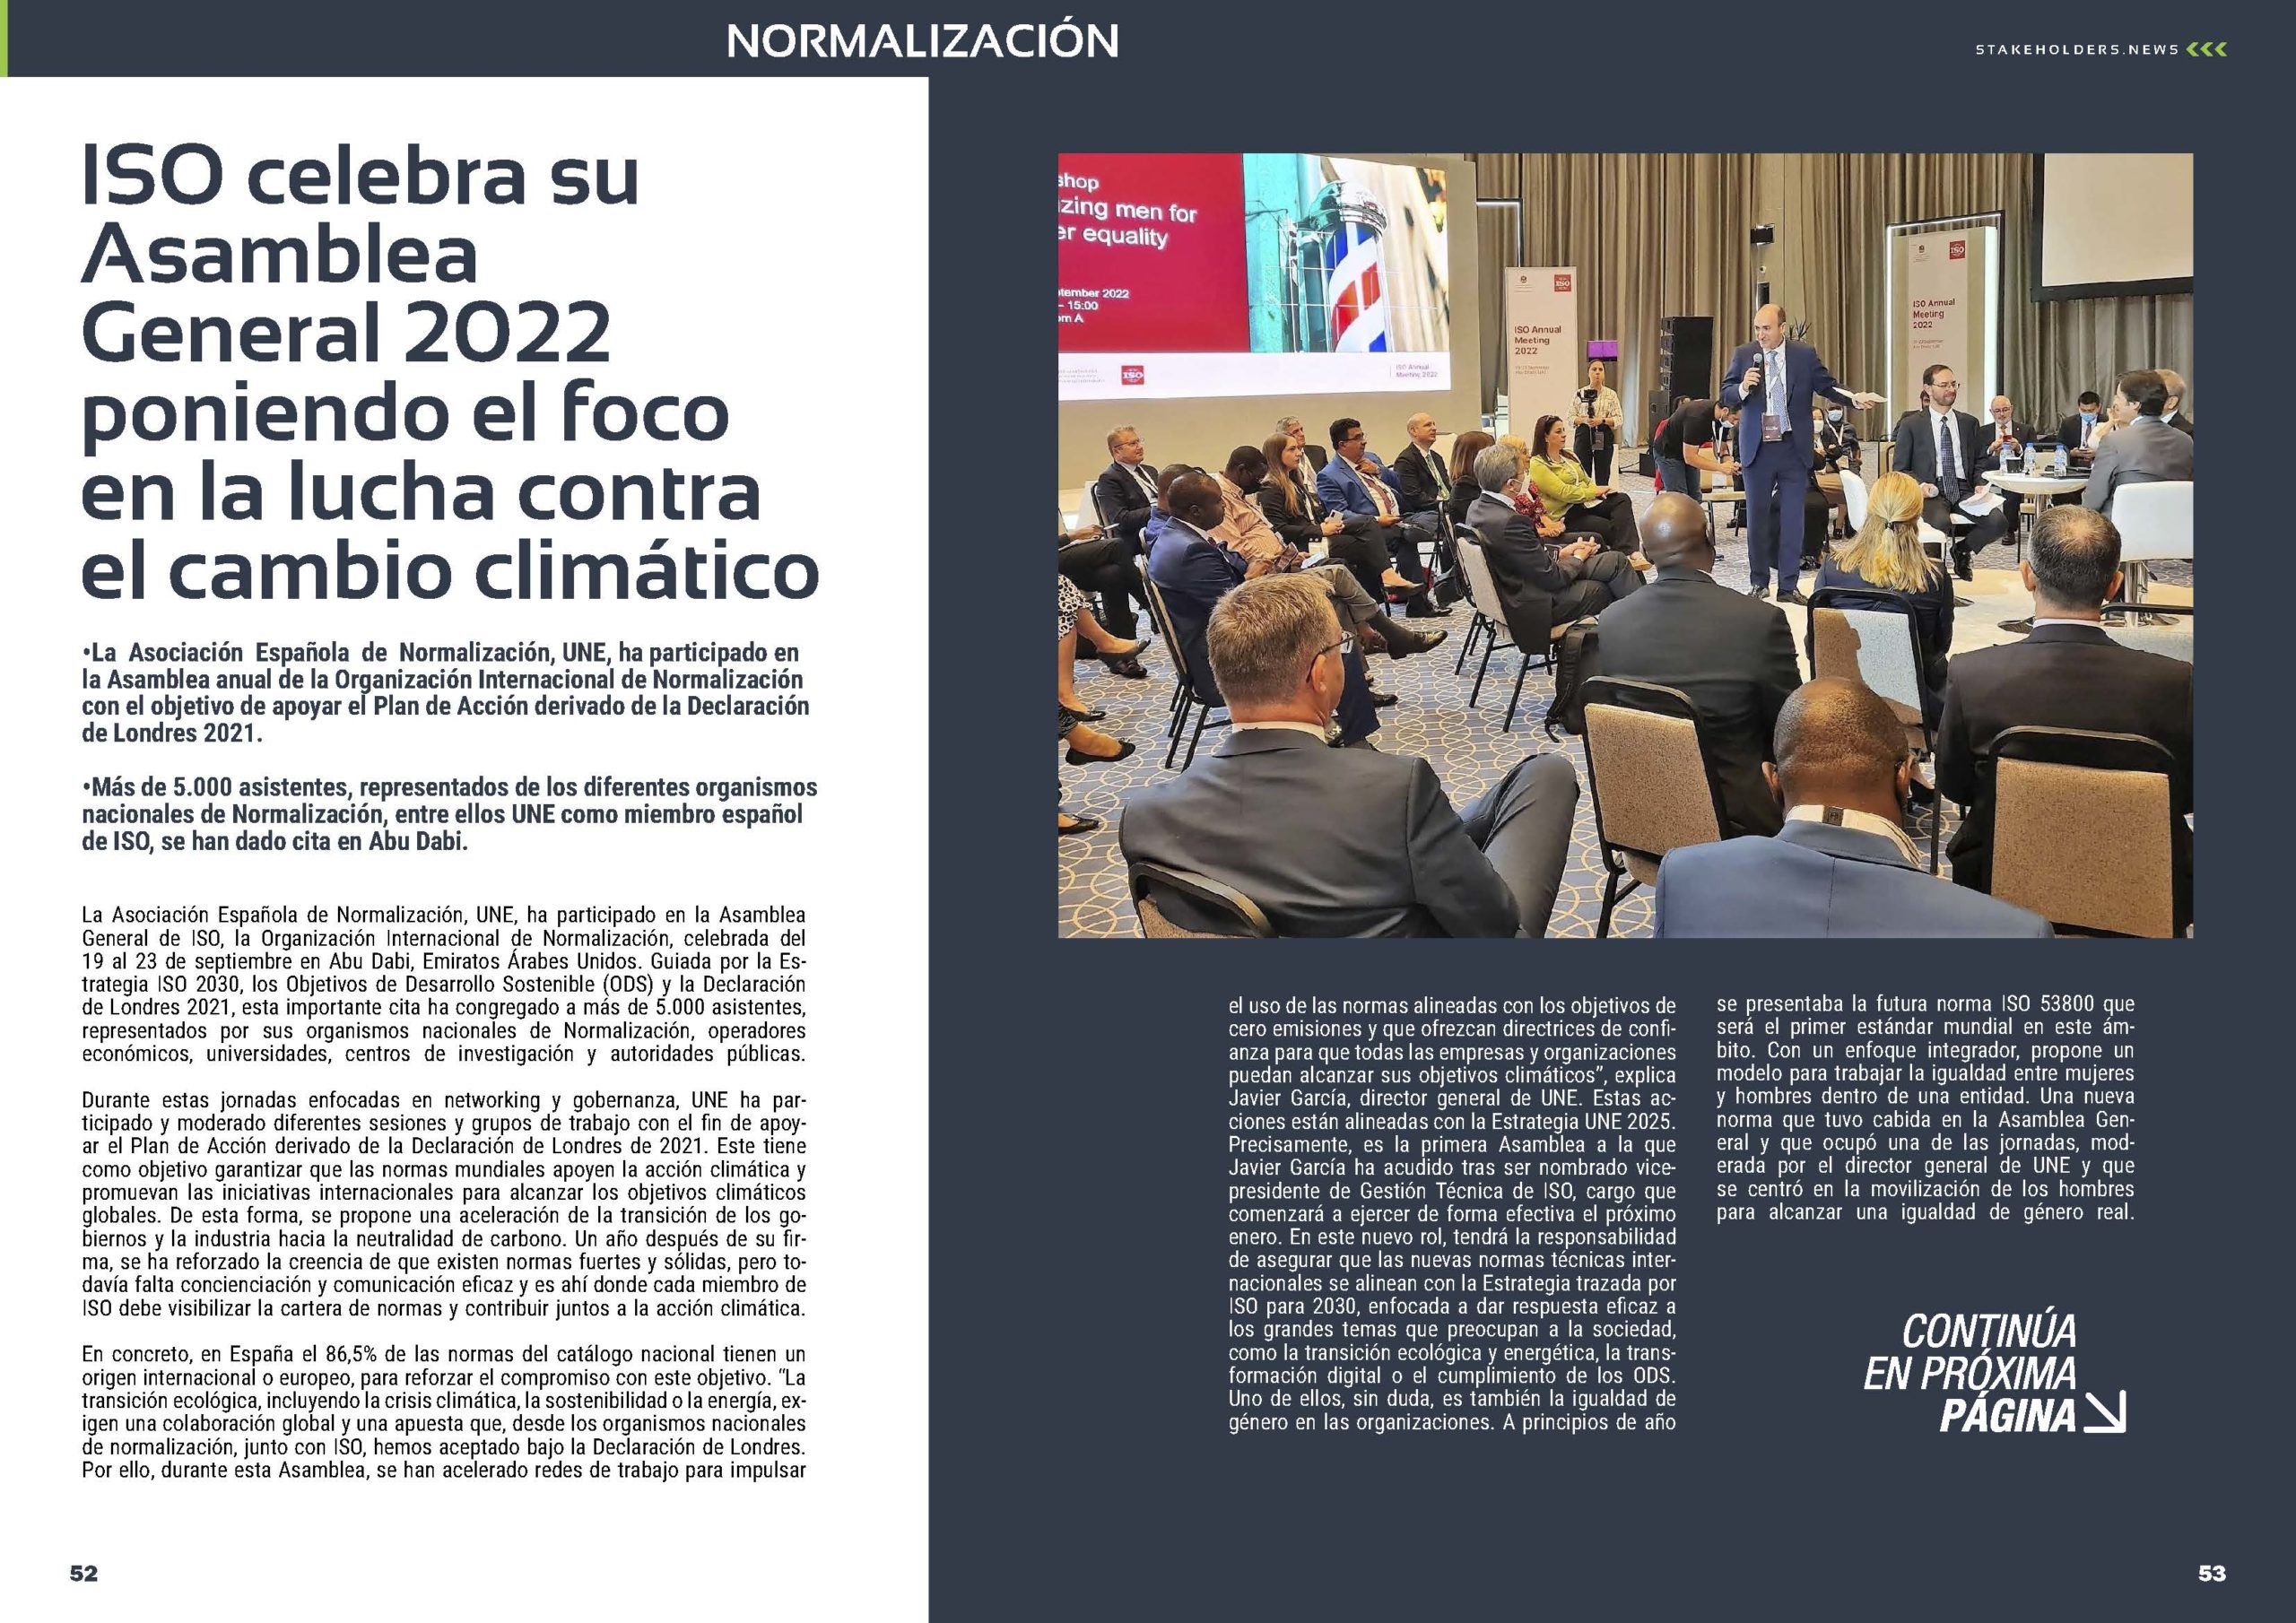 Artículo "ISO celebra su Asamblea General 2022 poniendo el foco en la lucha contra el cambio climático" de UNE Normalización Española en la Sección "Normalización" de la Revista Stakeholders.news de octubre de 2022